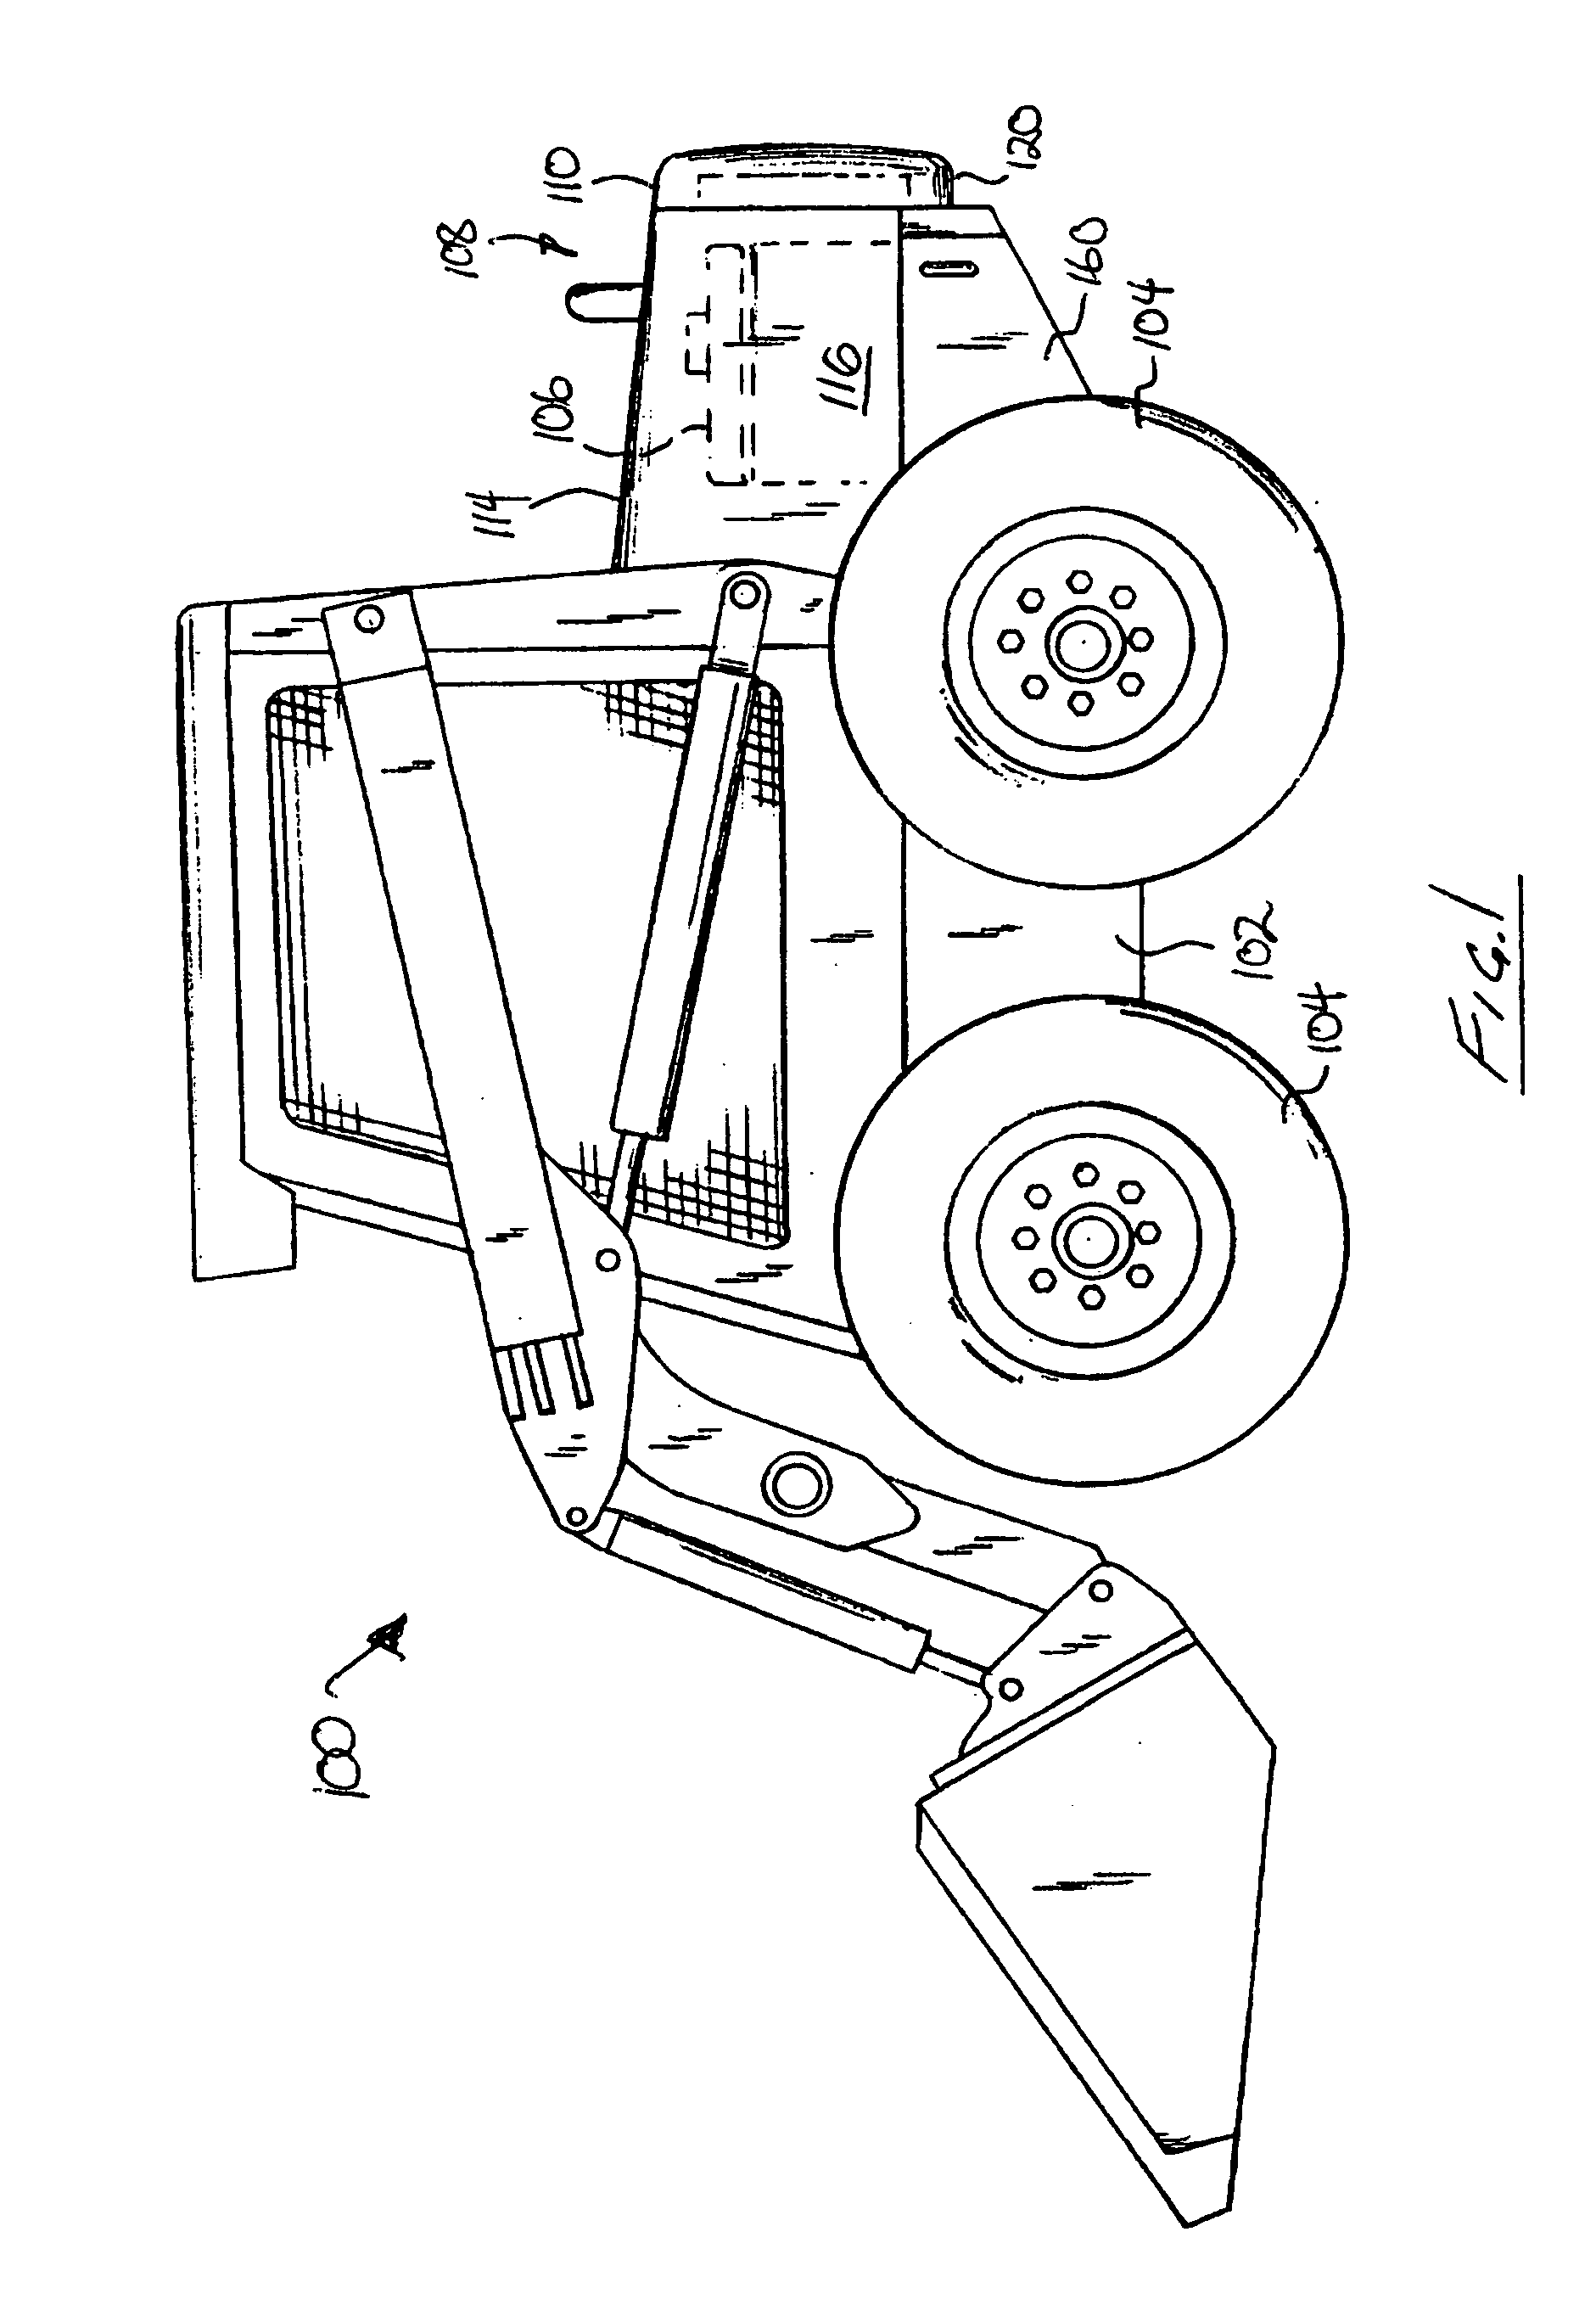 Radiator mounting system